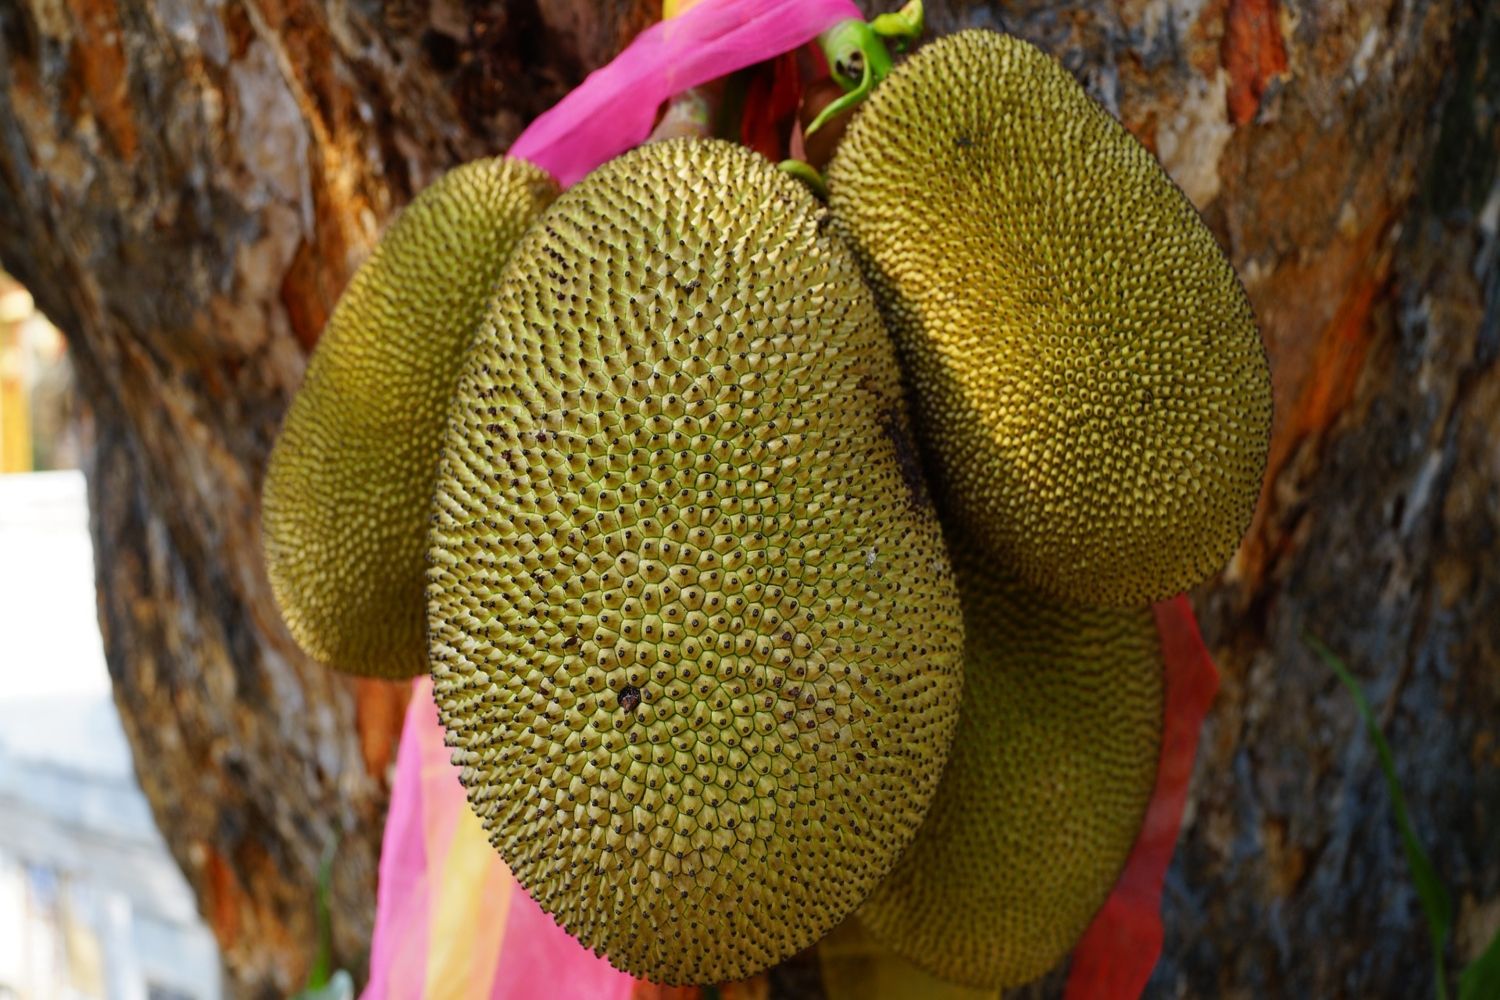 Cuatro yacas, también conocidas como jackfruit, colgadas de un árbol / PIXABAY